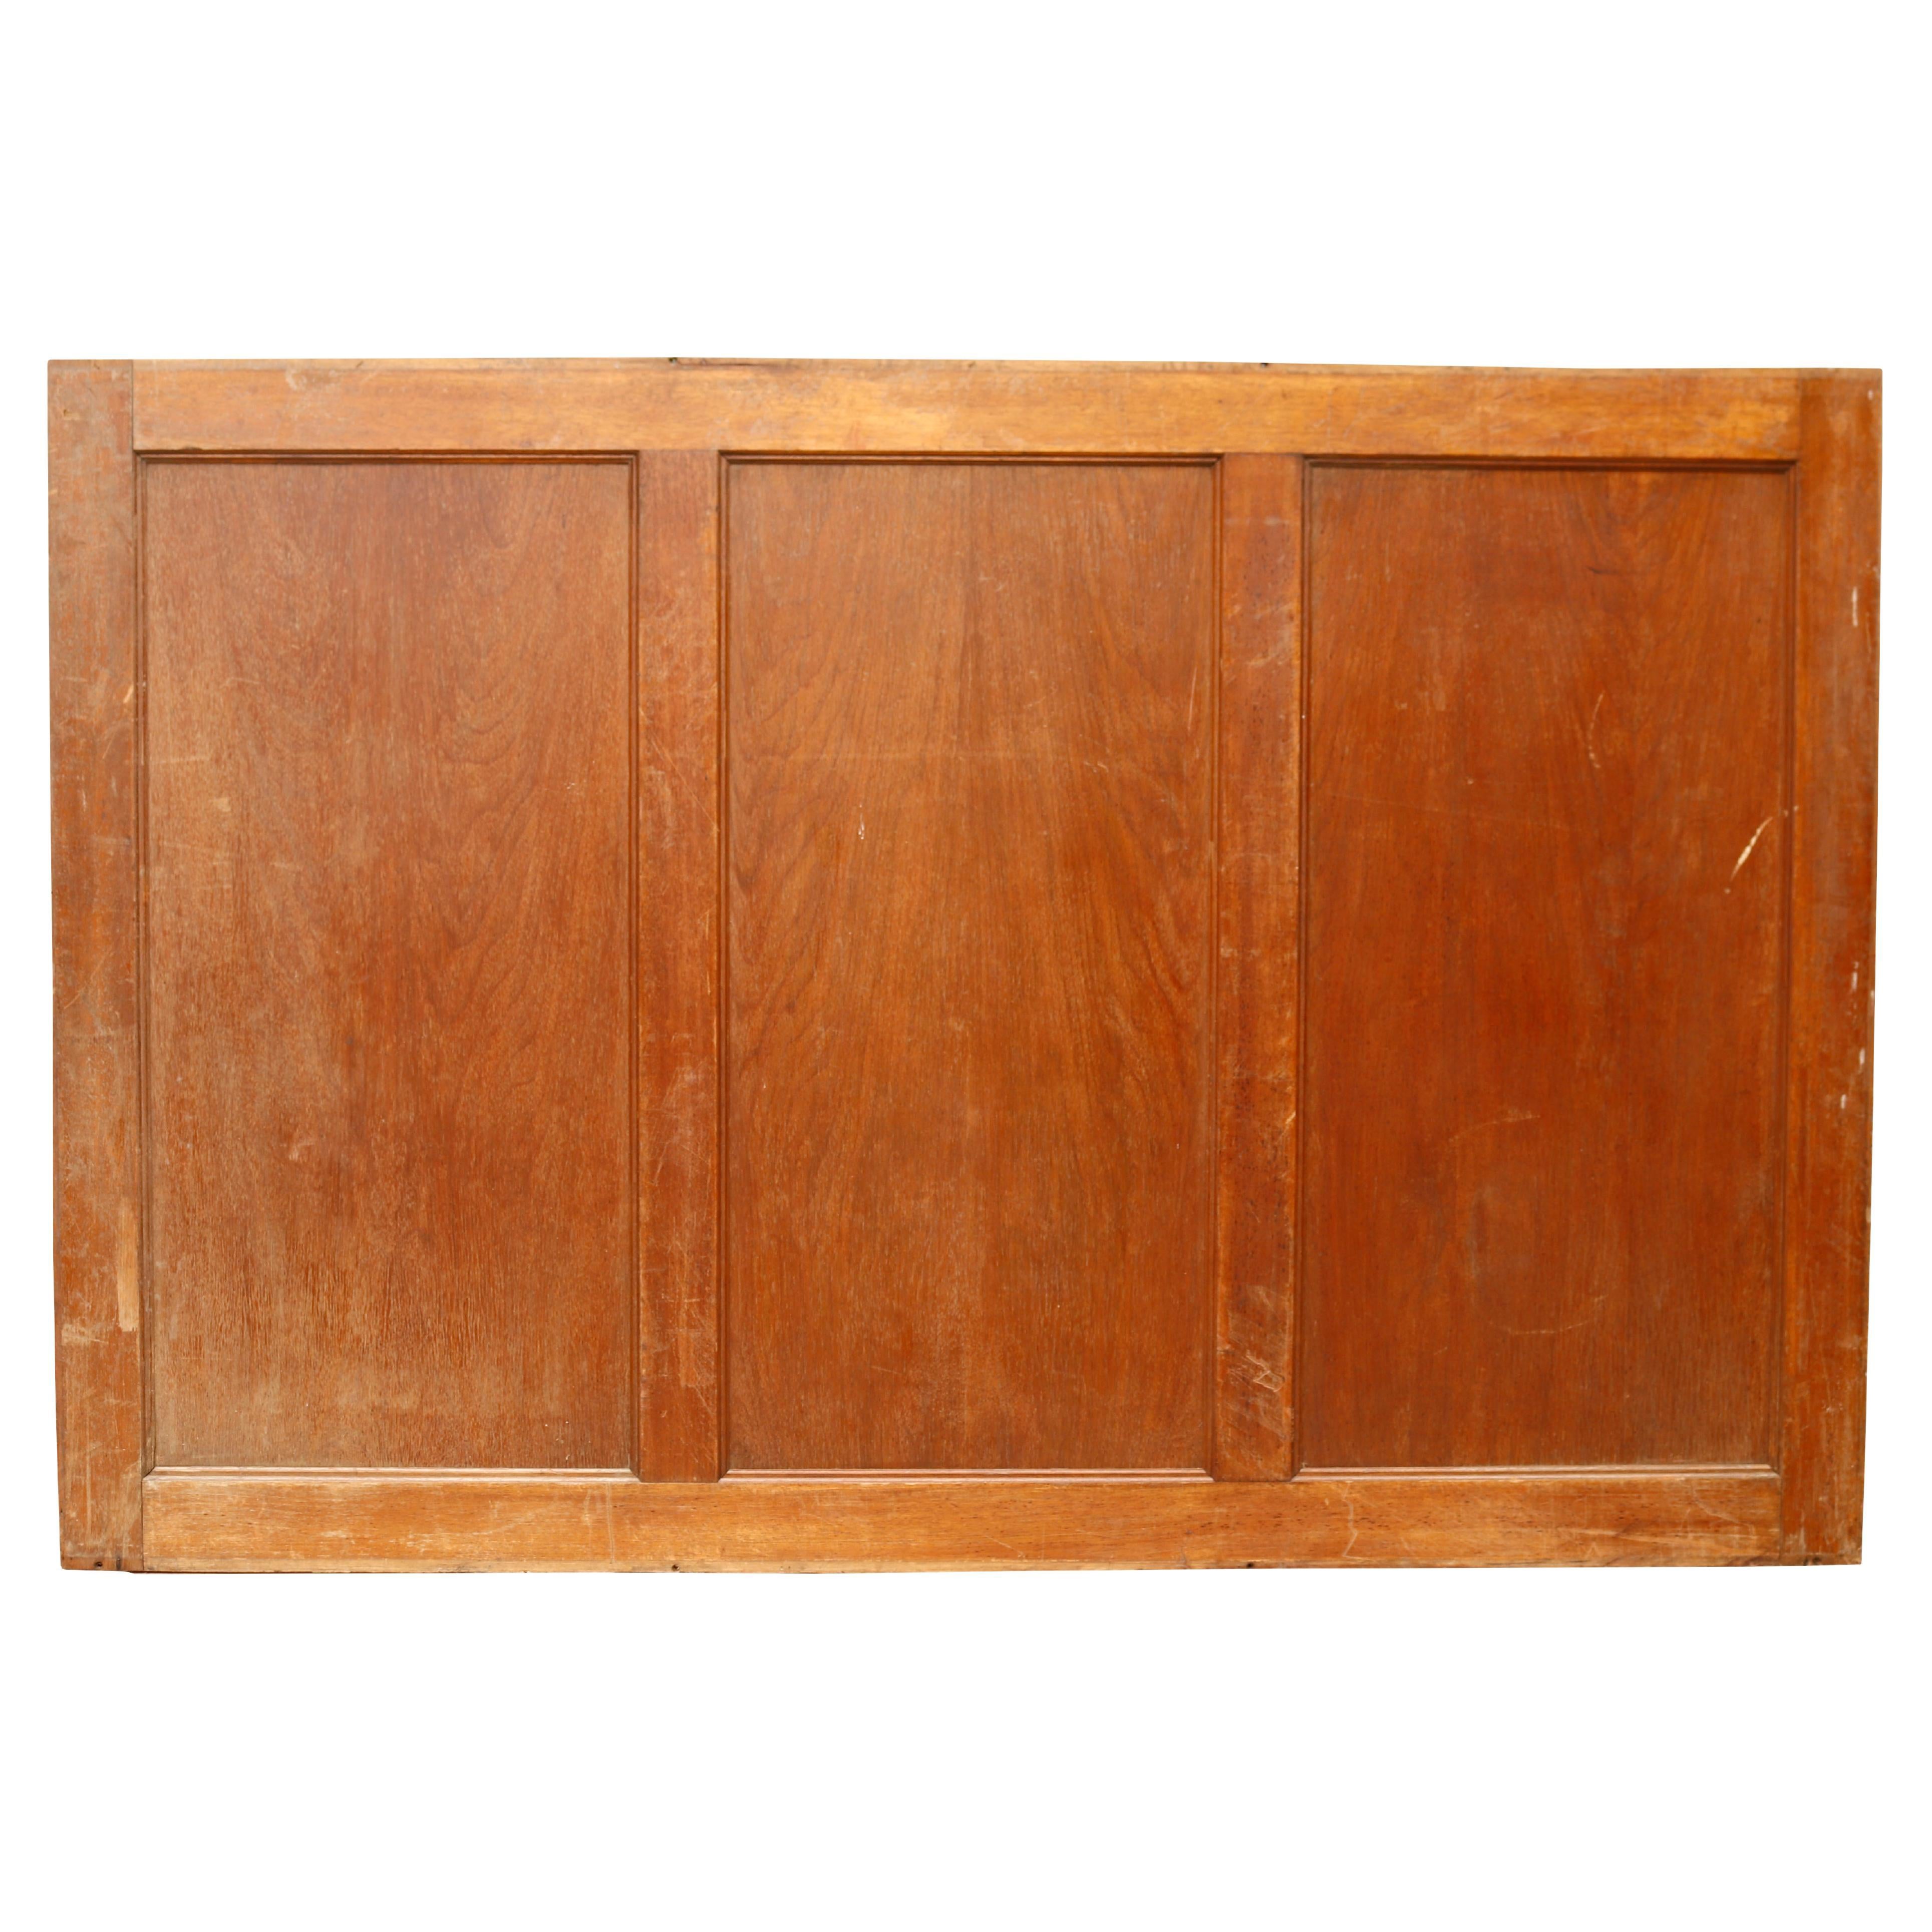 Reclaimed Oak Wall Panelling For Sale